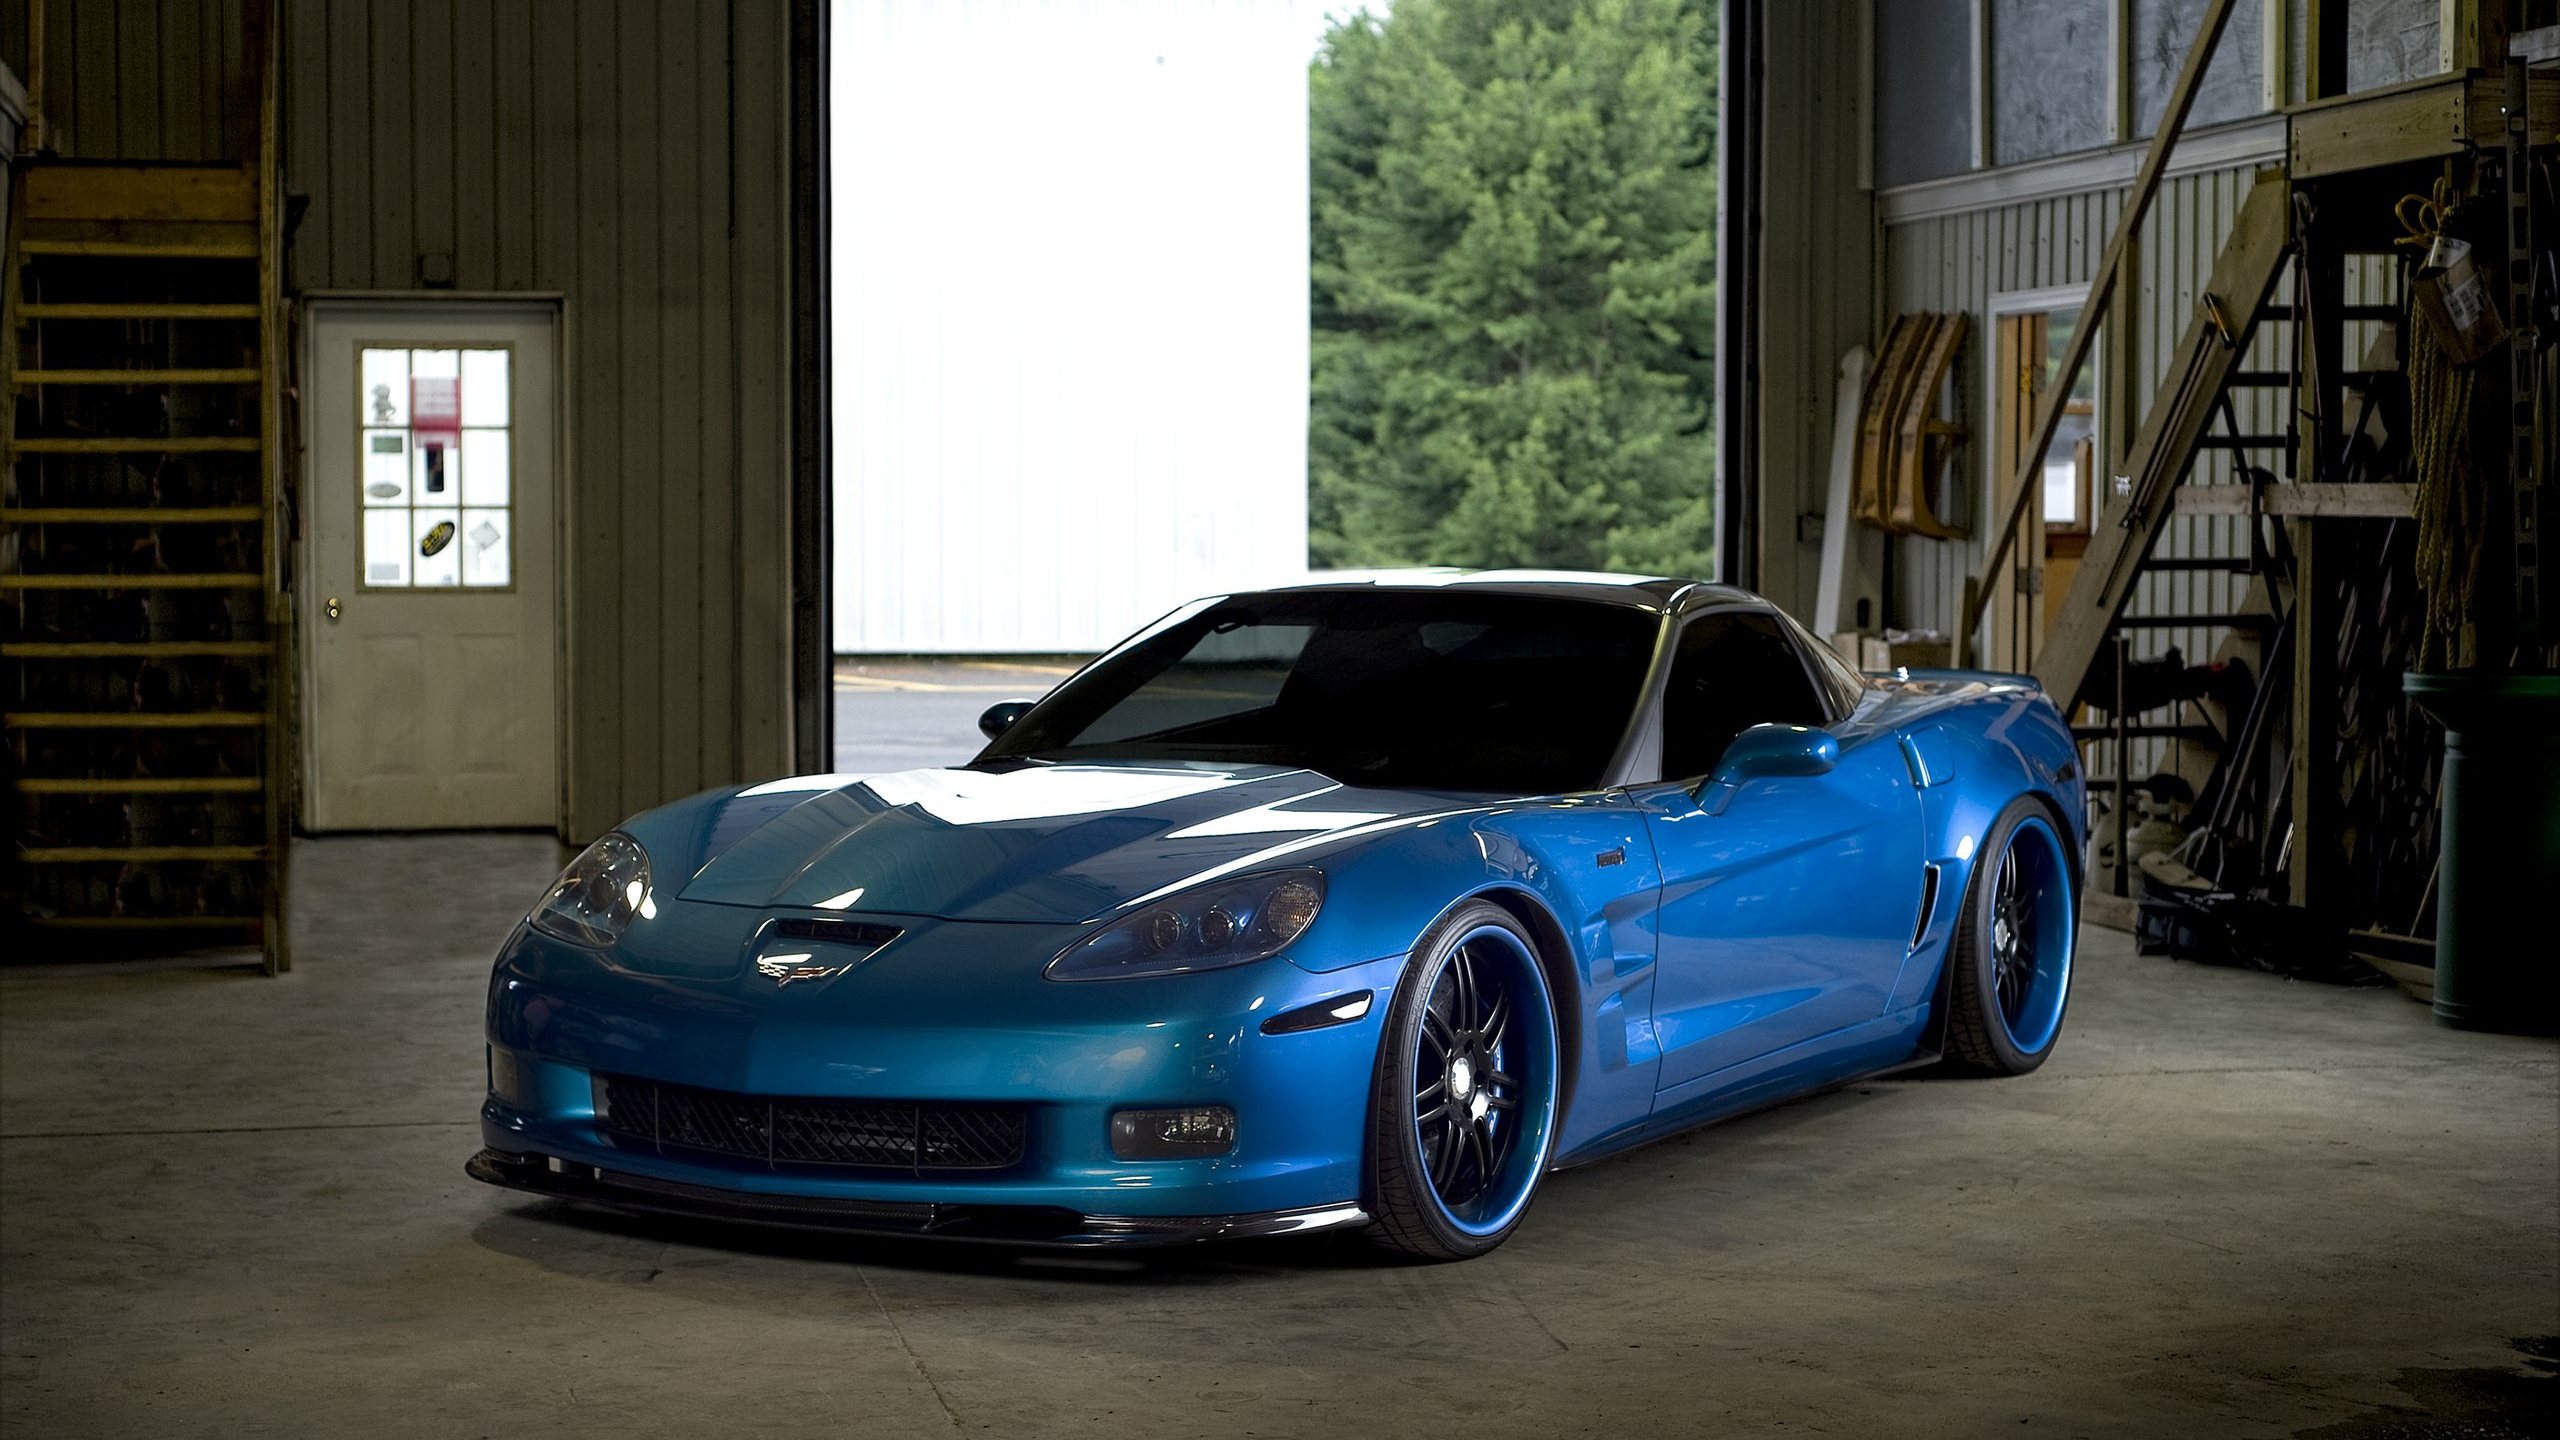 Синий Chevrolet Corvette в гараже дома.